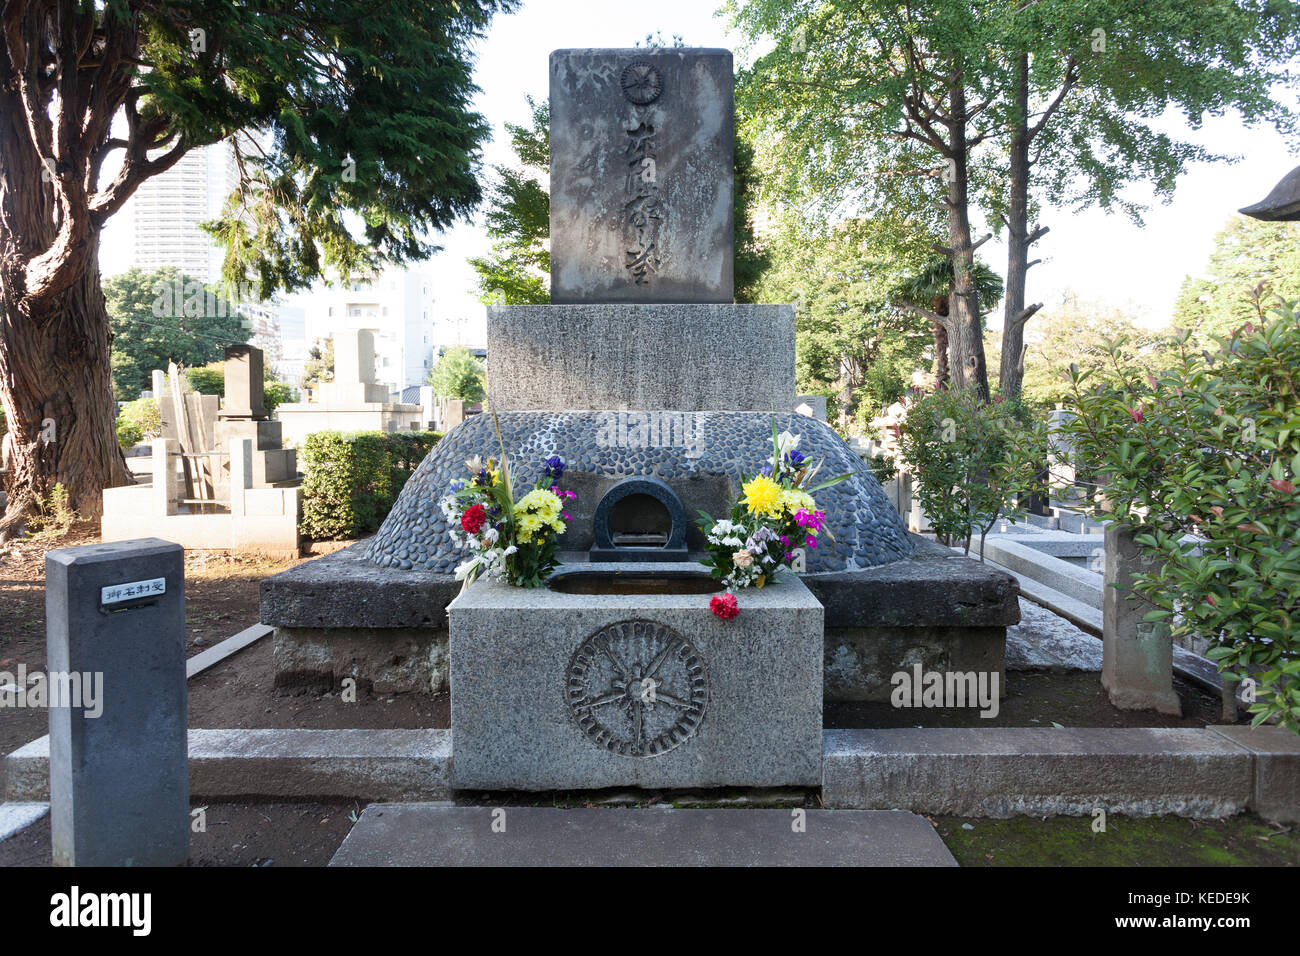 The grave of Japanese wartime leader, Hideki Tojo in Zoshigaya Cemetery, Tokyo, Japan Stock Photo